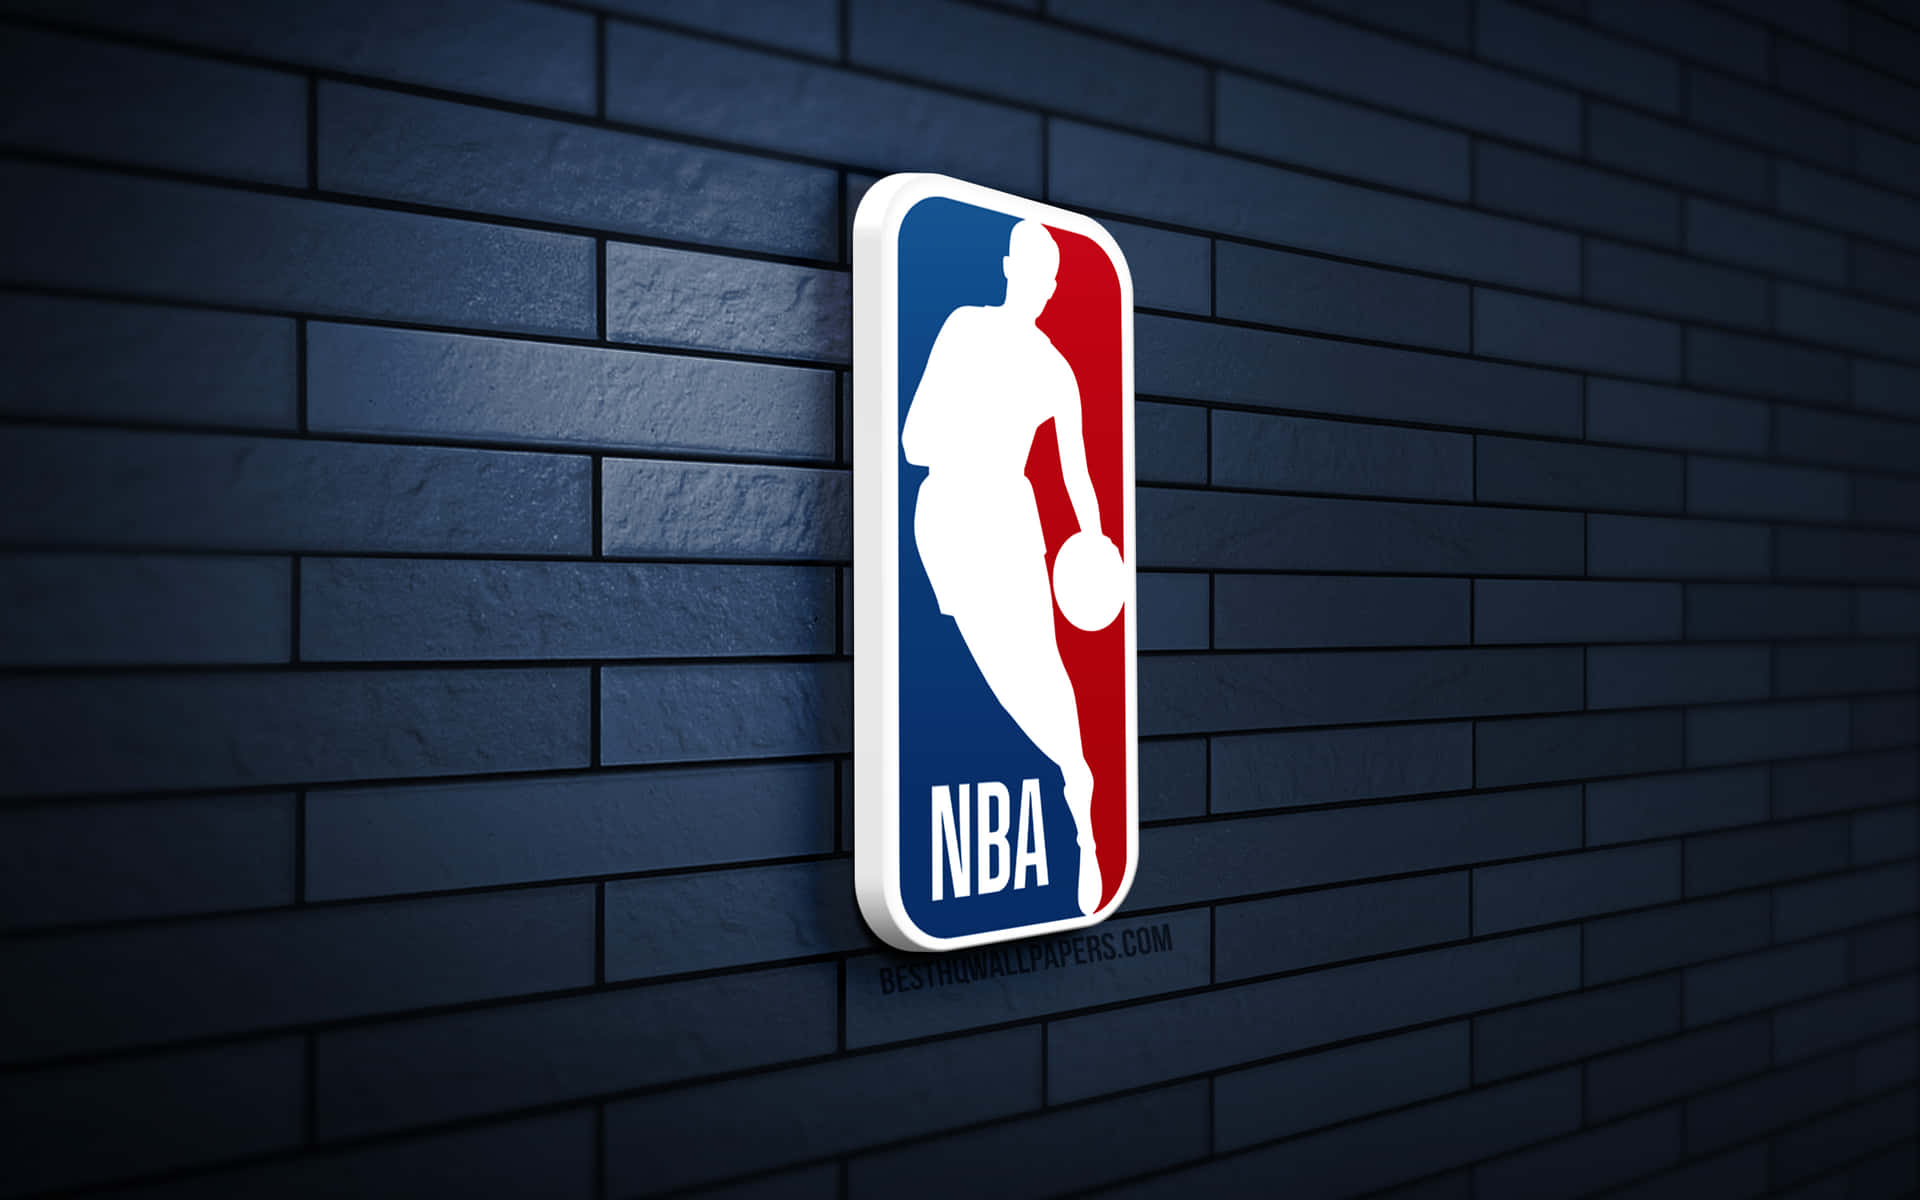 Đẹp mê hồn với hình nền NBA logo đen trên nền đen! Logo NBA được thể hiện rõ nét trên nền đen đầy tinh tế, mang lại cho bạn một cảm giác thực sự đẳng cấp và sang trọng. Hãy chọn ngay hình nền này cho điện thoại của bạn để khiến mọi người bất ngờ với sự lựa chọn tuyệt vời của bạn!